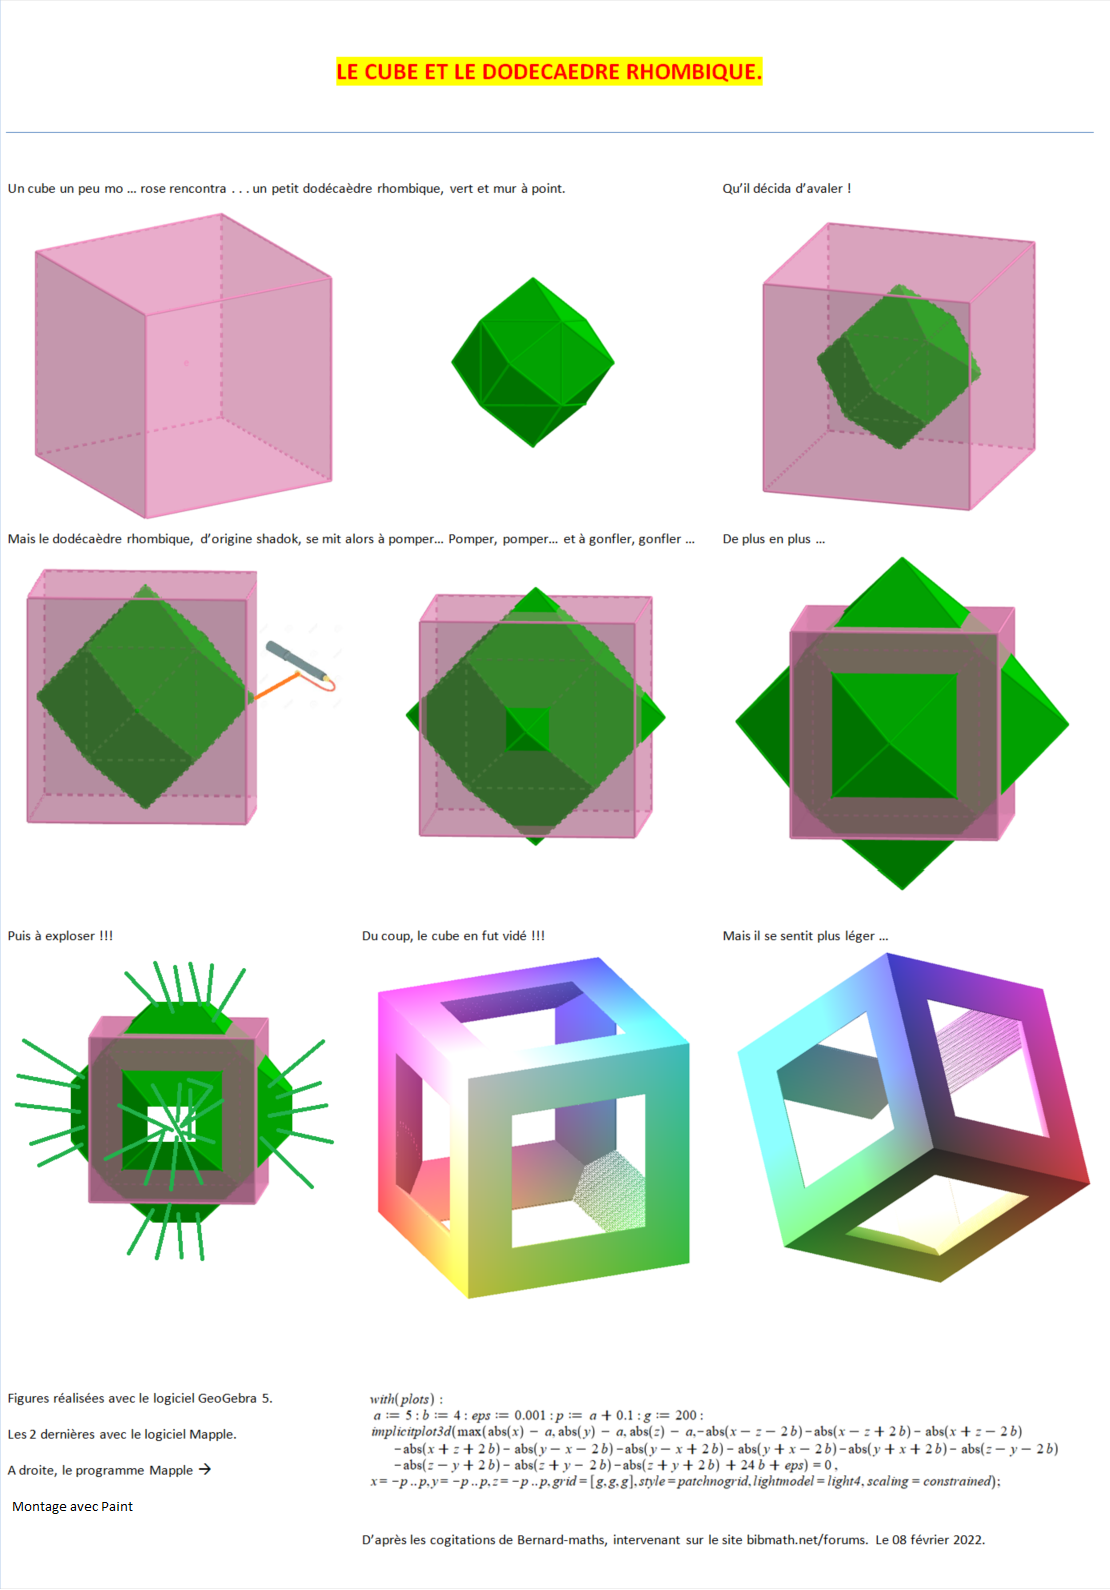 LBiugz6EGcH_BD-02-Cube-Paint-2022-02-08.png